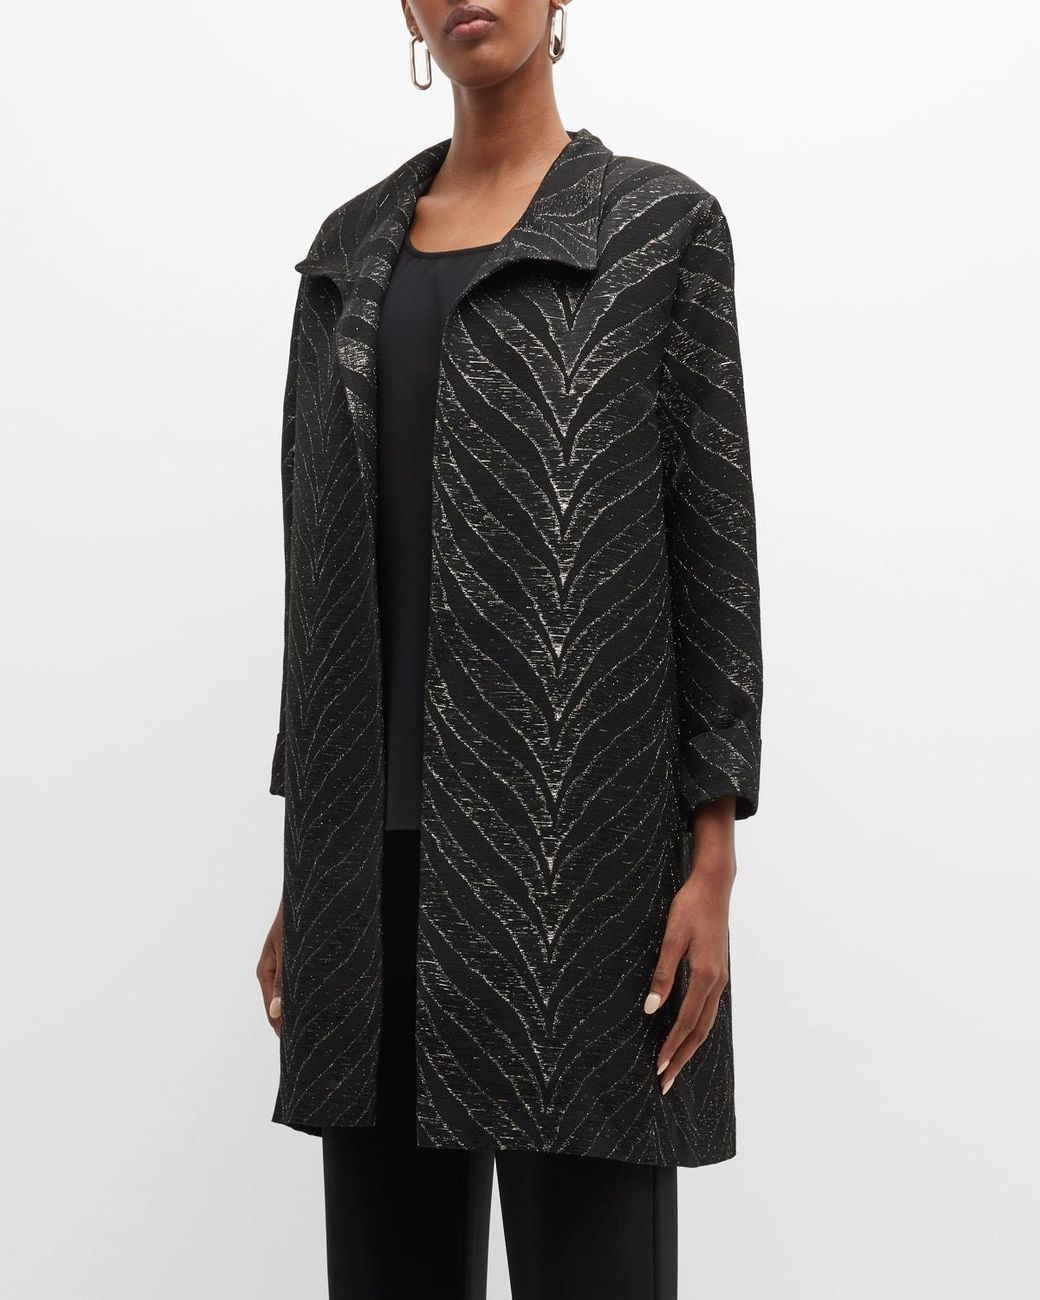 Caroline Rose Shimmer Shine Jacquard Jacket in Black | Lyst